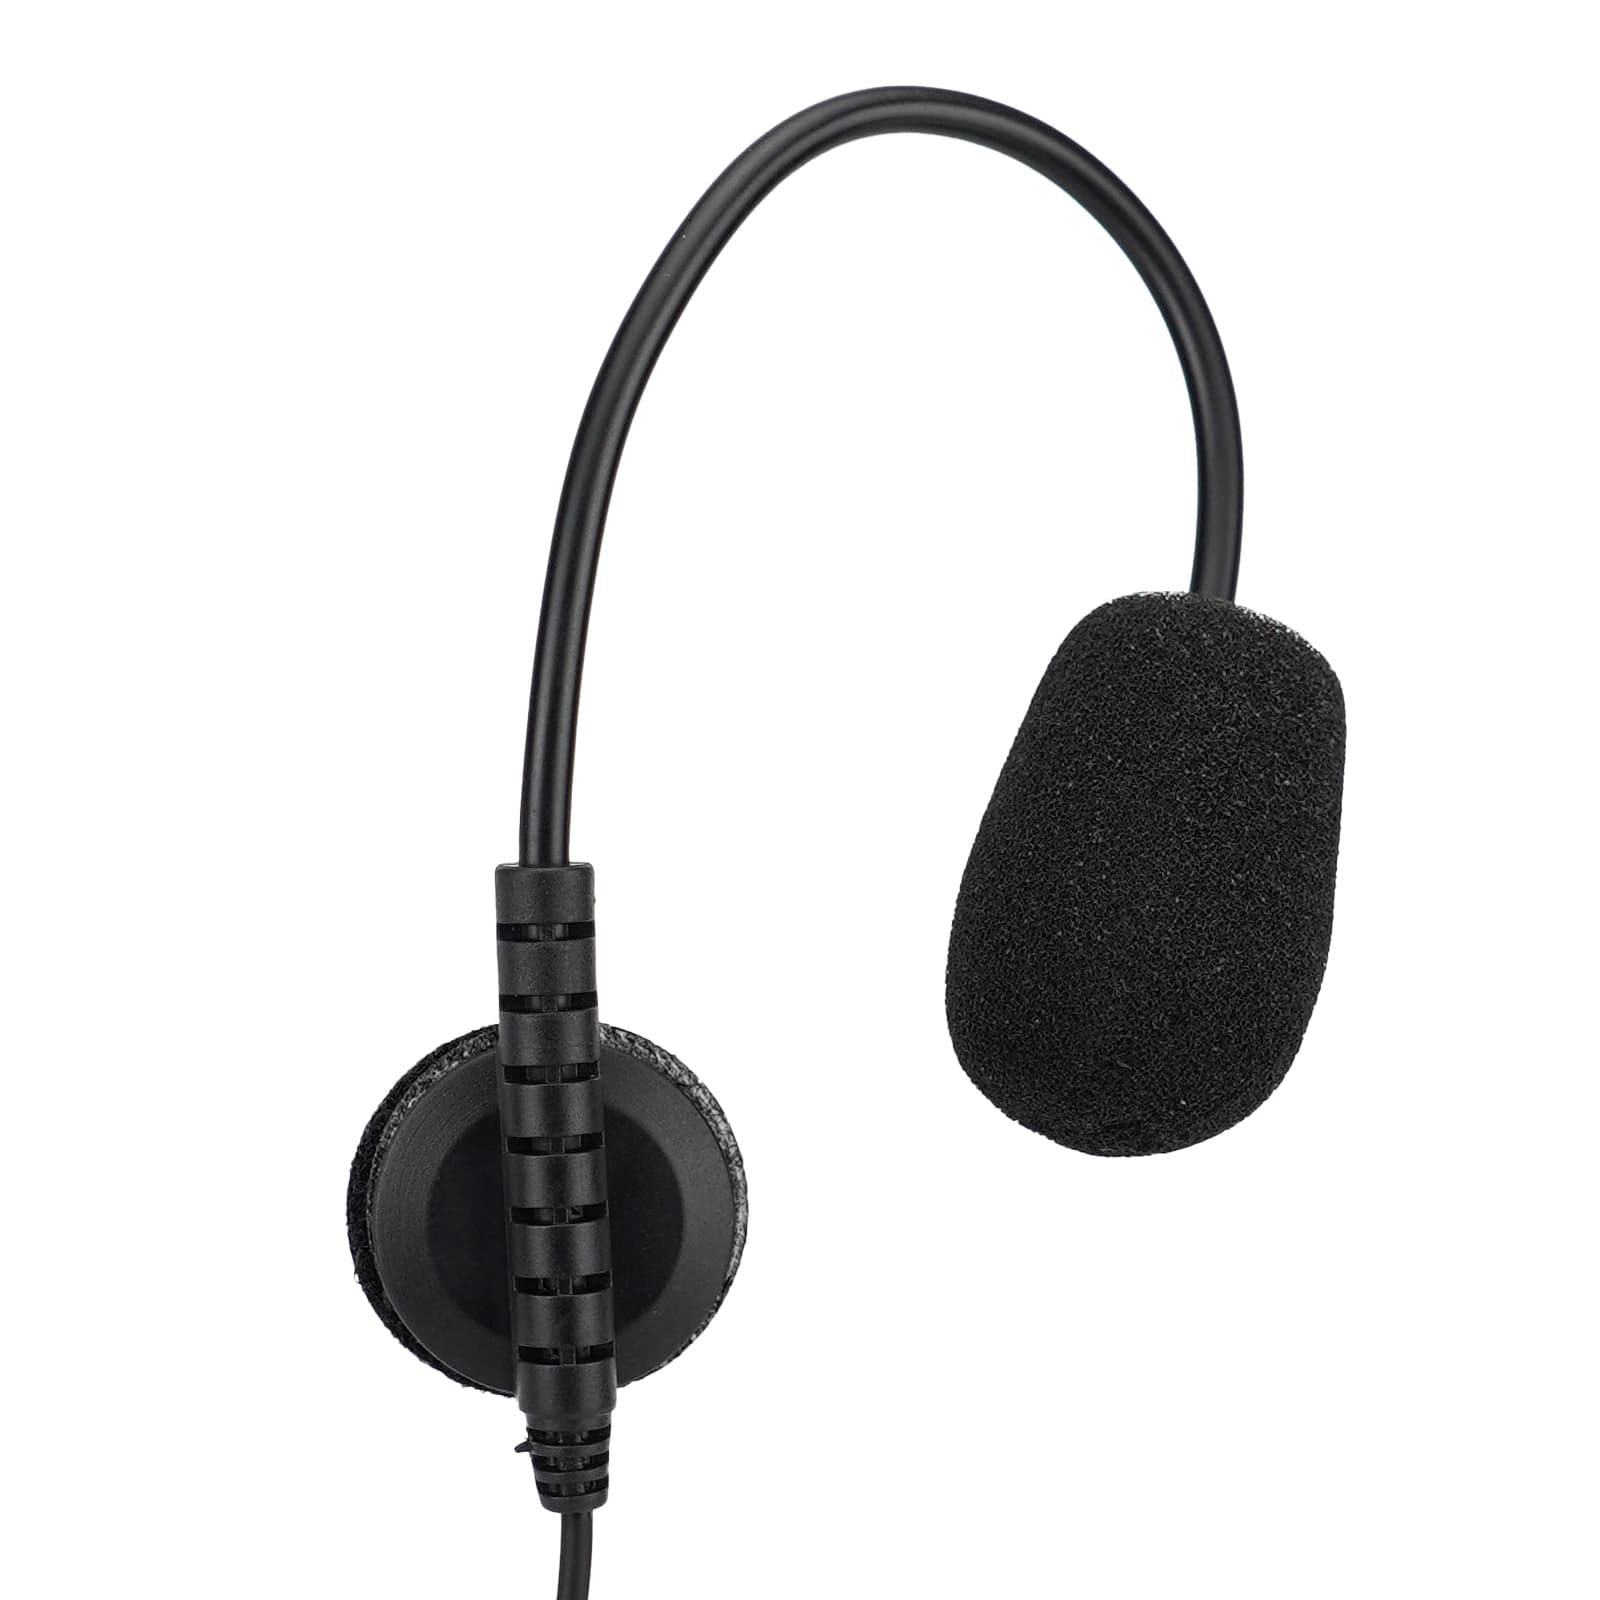 Adjustable Boom Microphone for Retevis EHK010 Helmet Headset